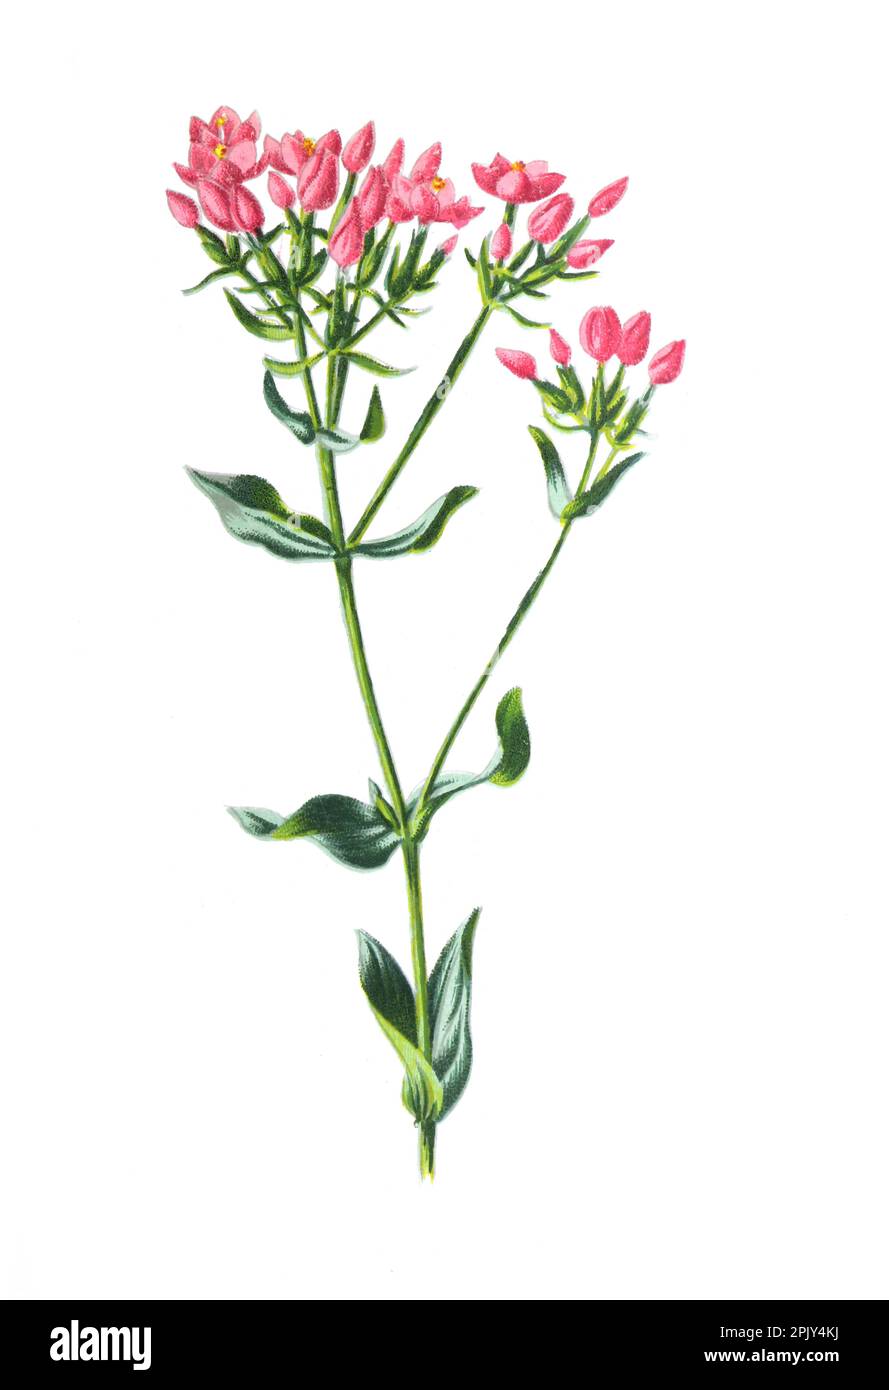 Pianta medicinale centaurica comune (Centaurium erythraea). Illustrazione di antichi fiori di campo disegnati a mano. Illustrazione di fiori d'epoca. Foto Stock